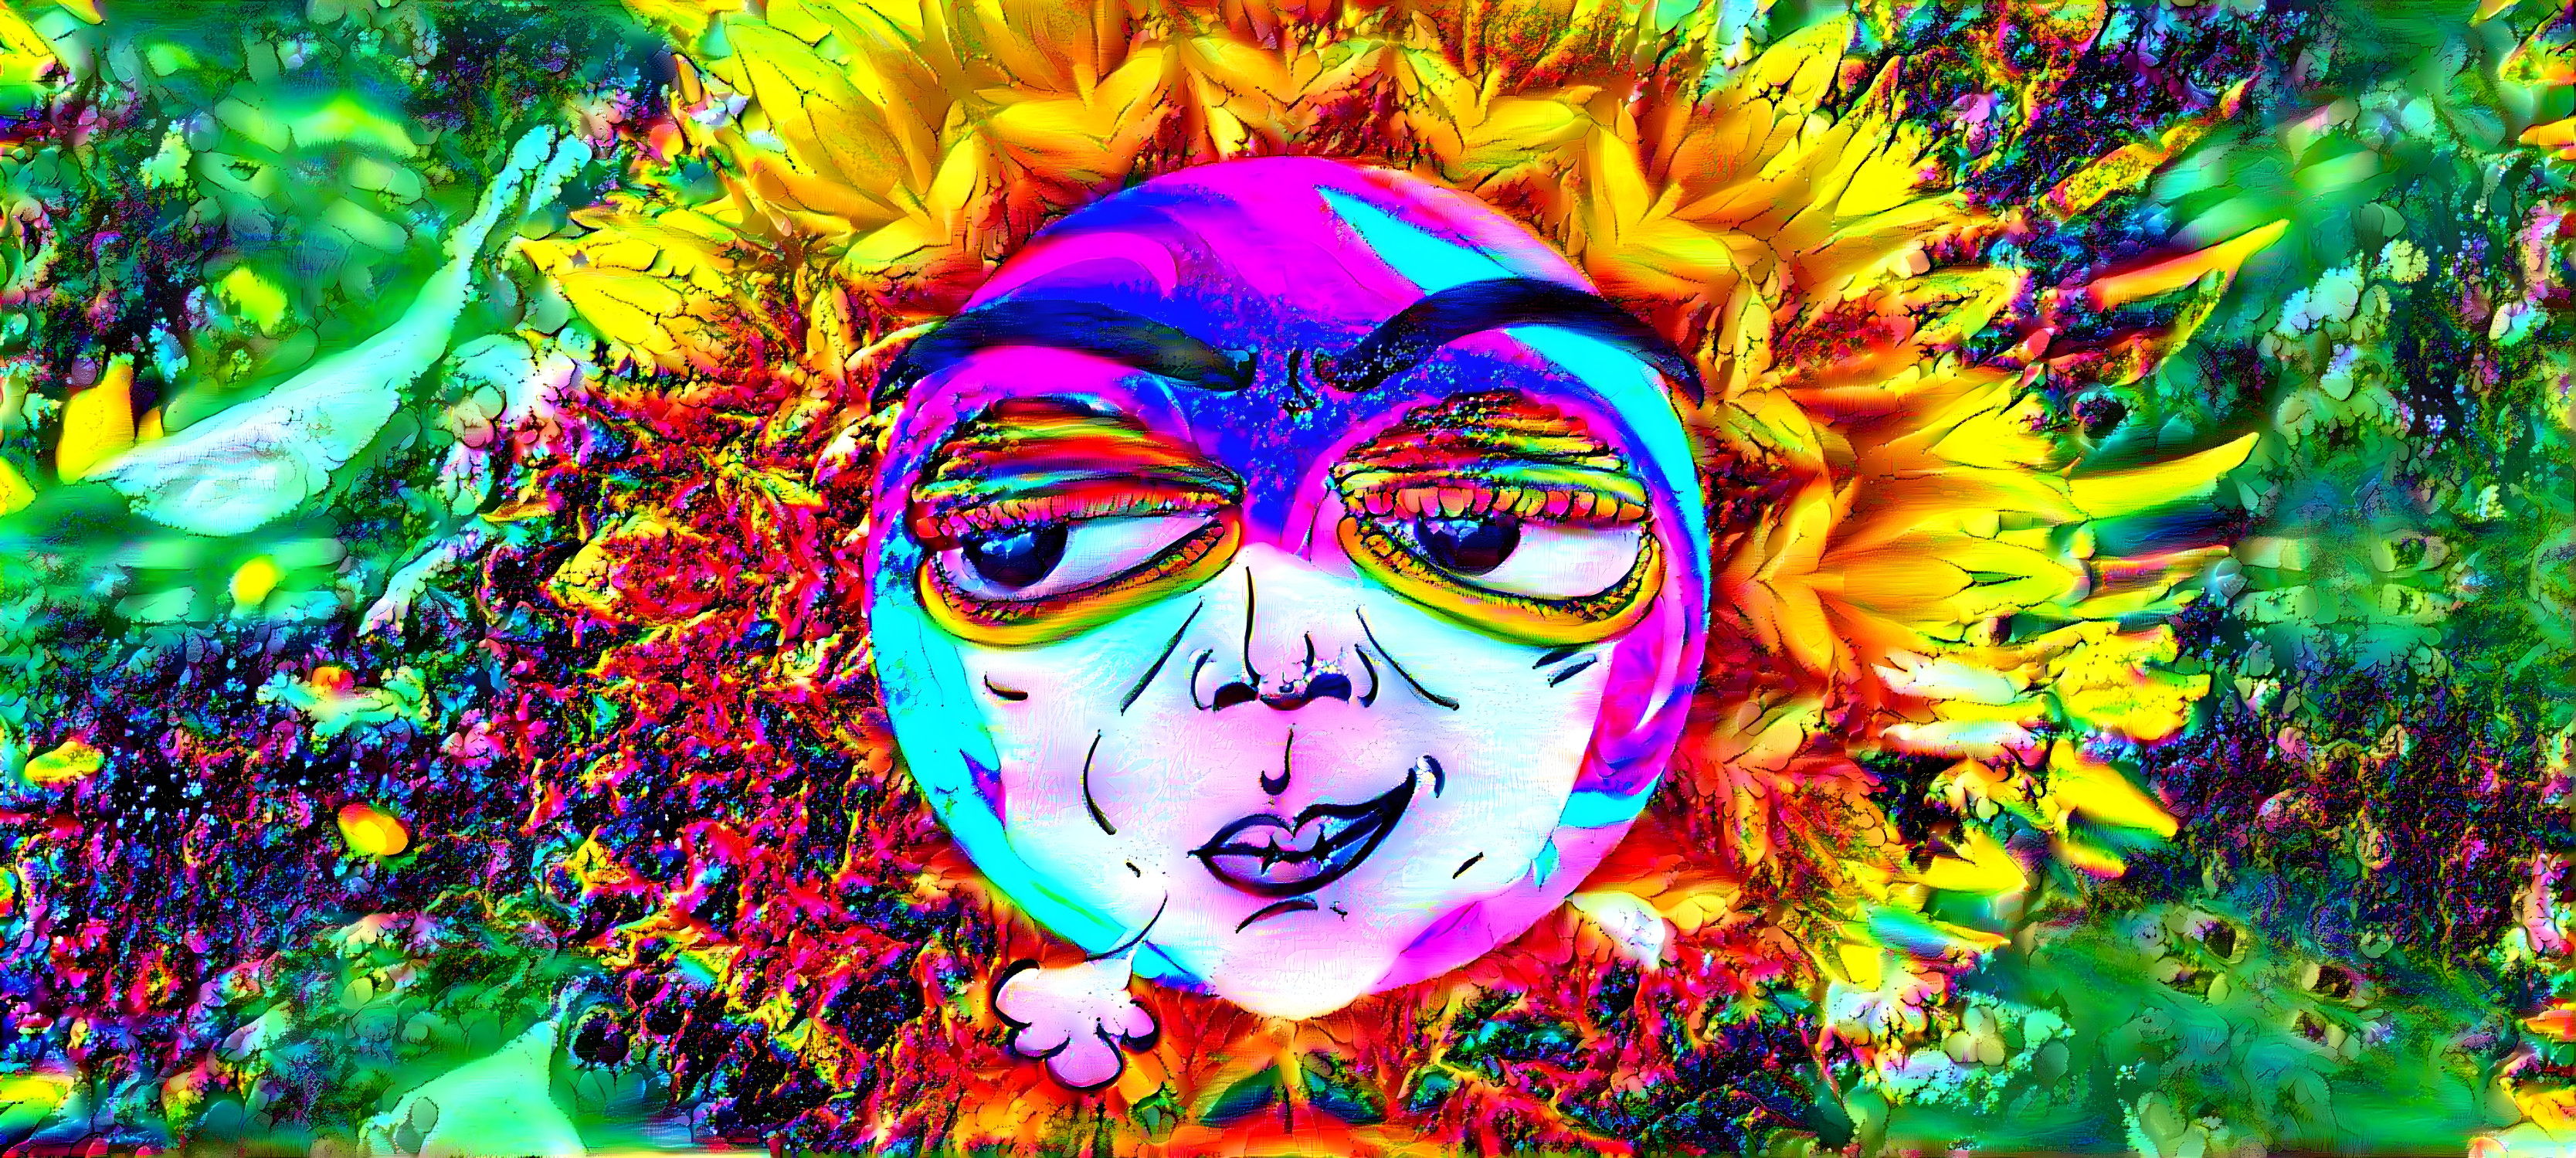 Sunflower face